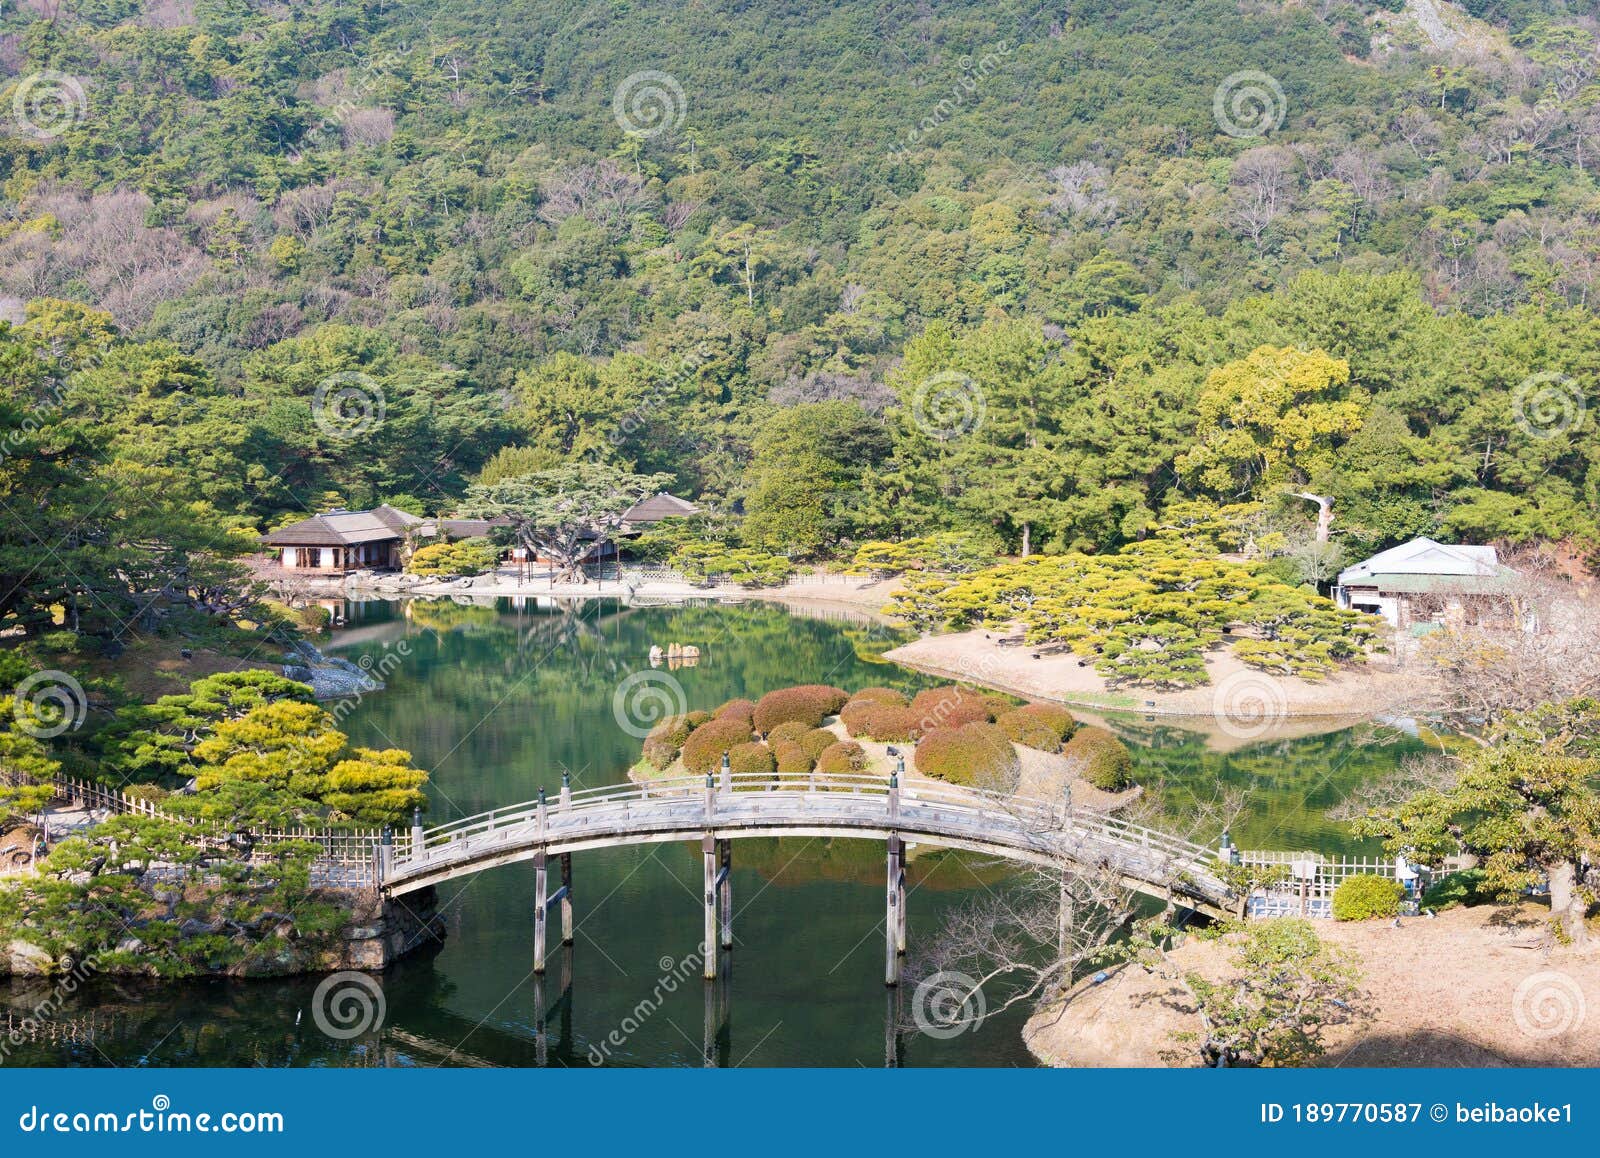 Ritsurin Garden in Takamatsu, Kagawa, Japan. Ritsurin Garden is One of ...